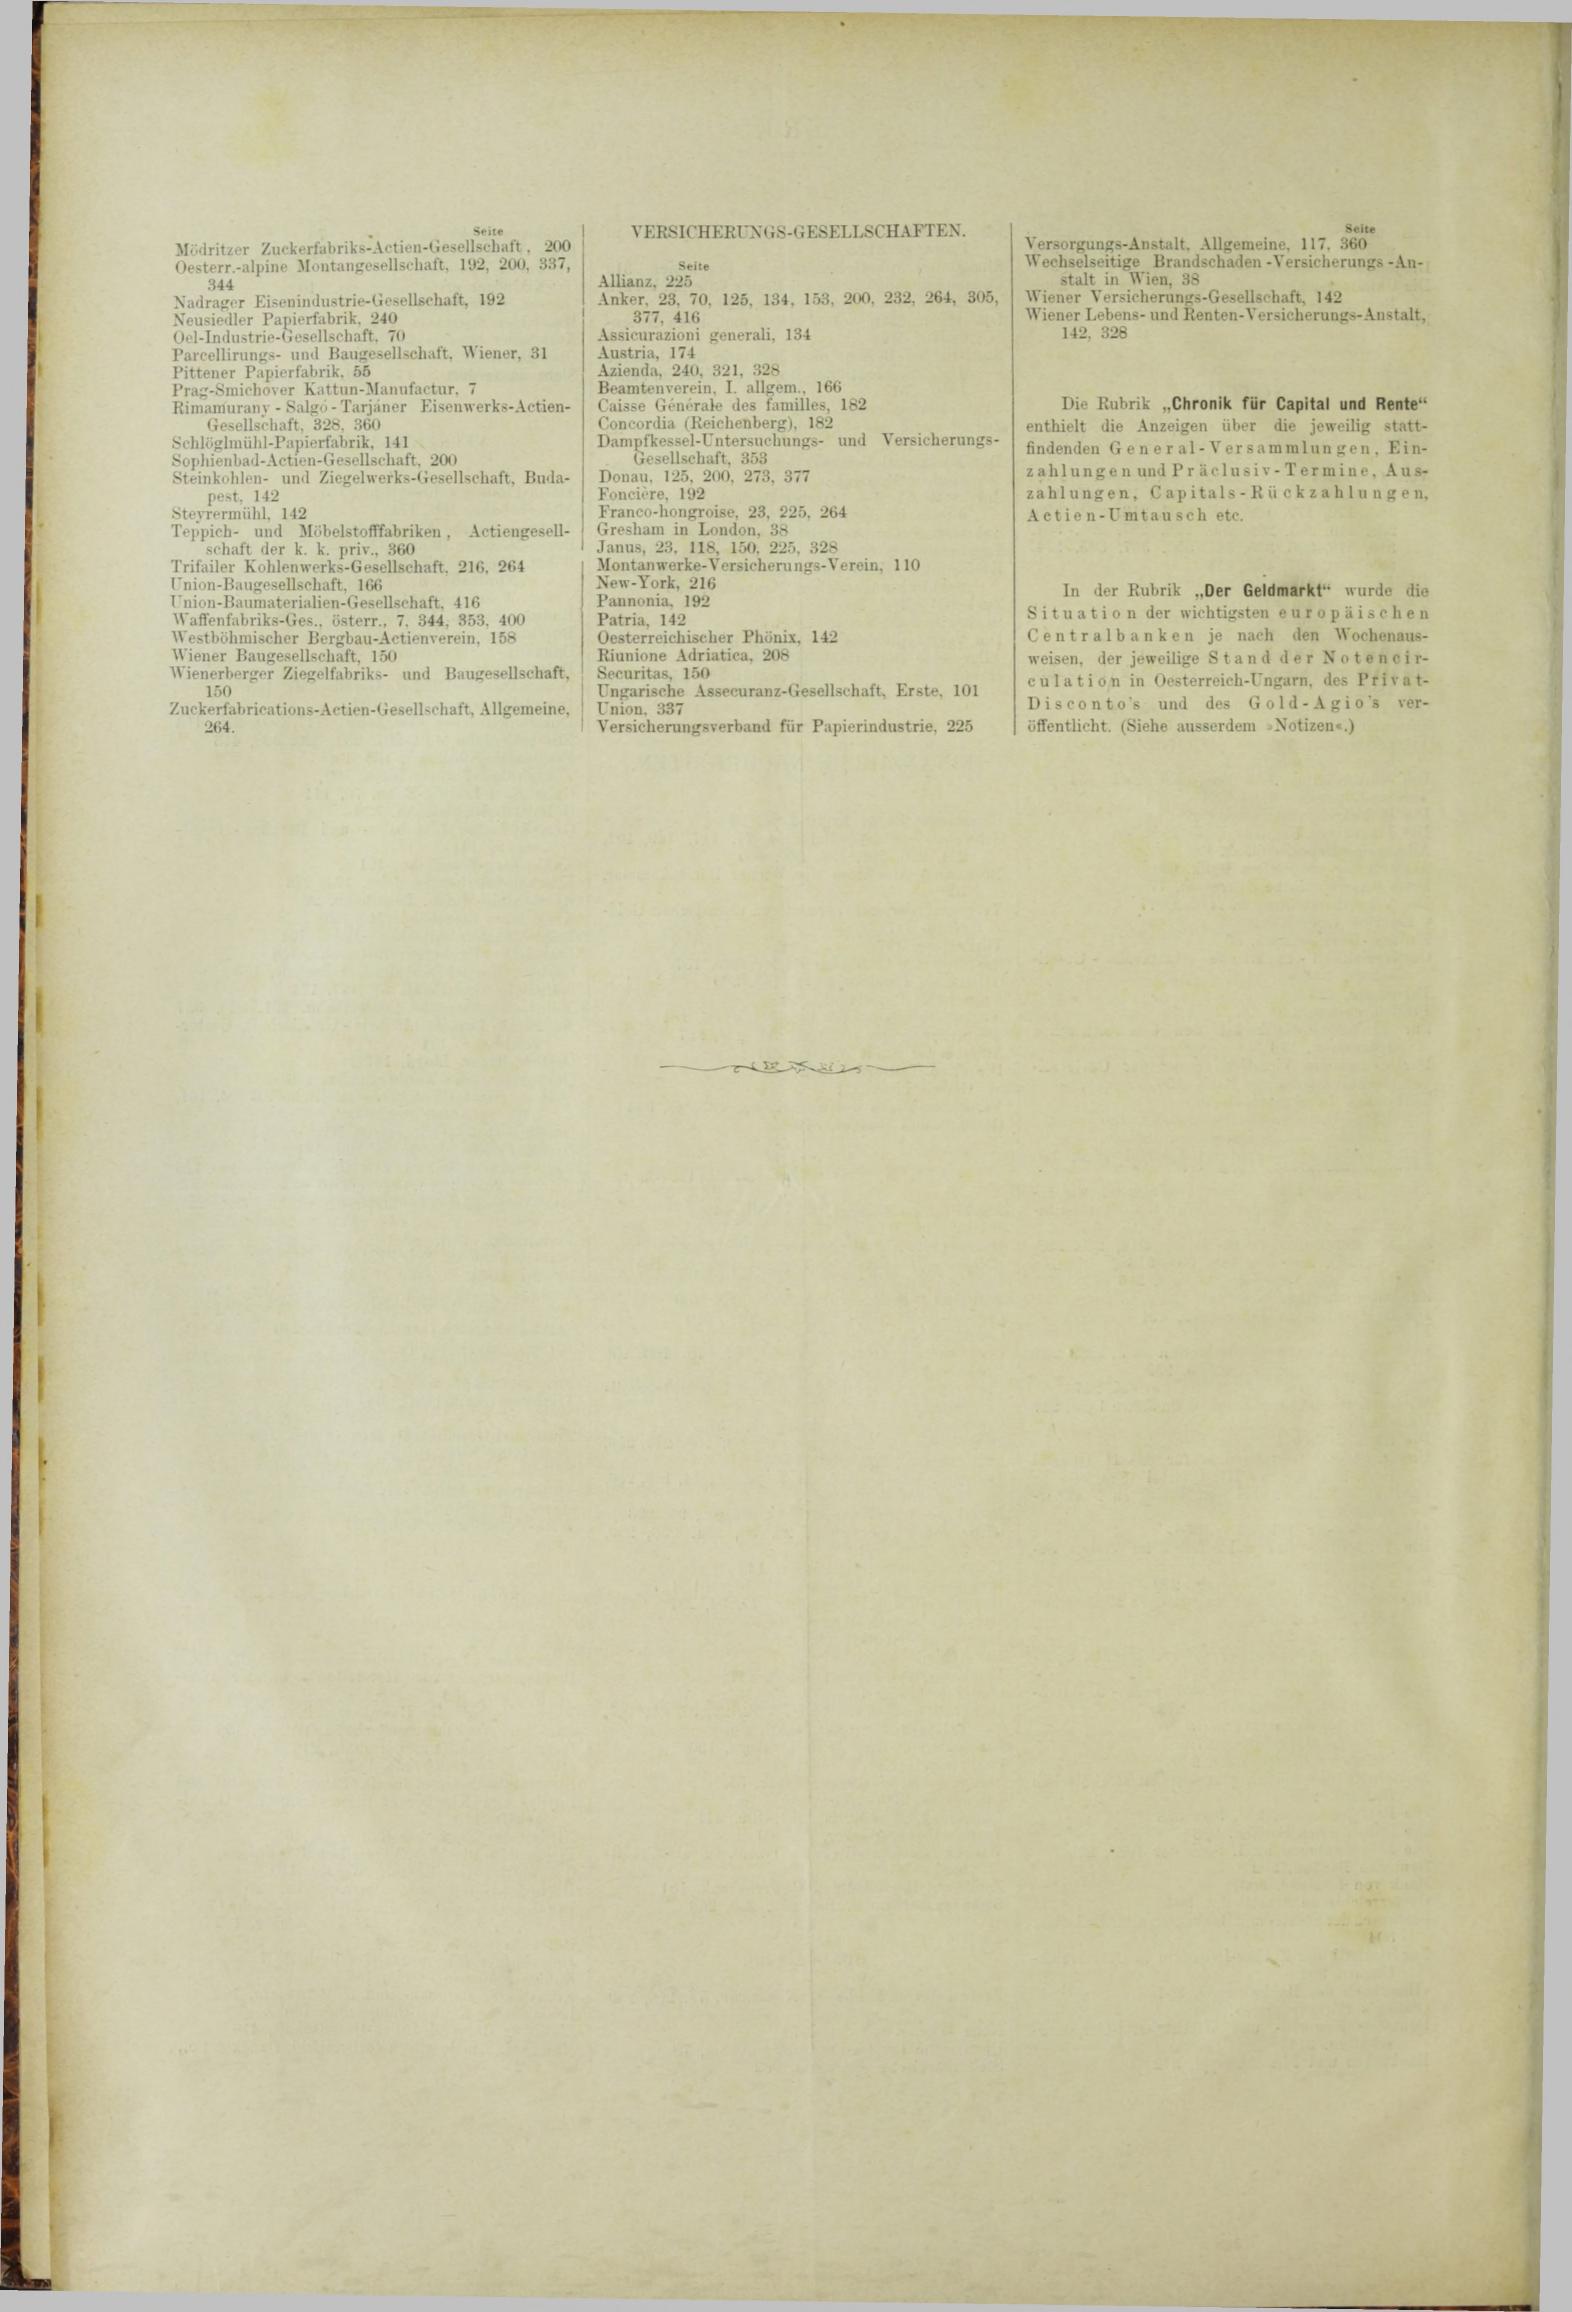 Der Tresor 22.02.1883 - Seite 12